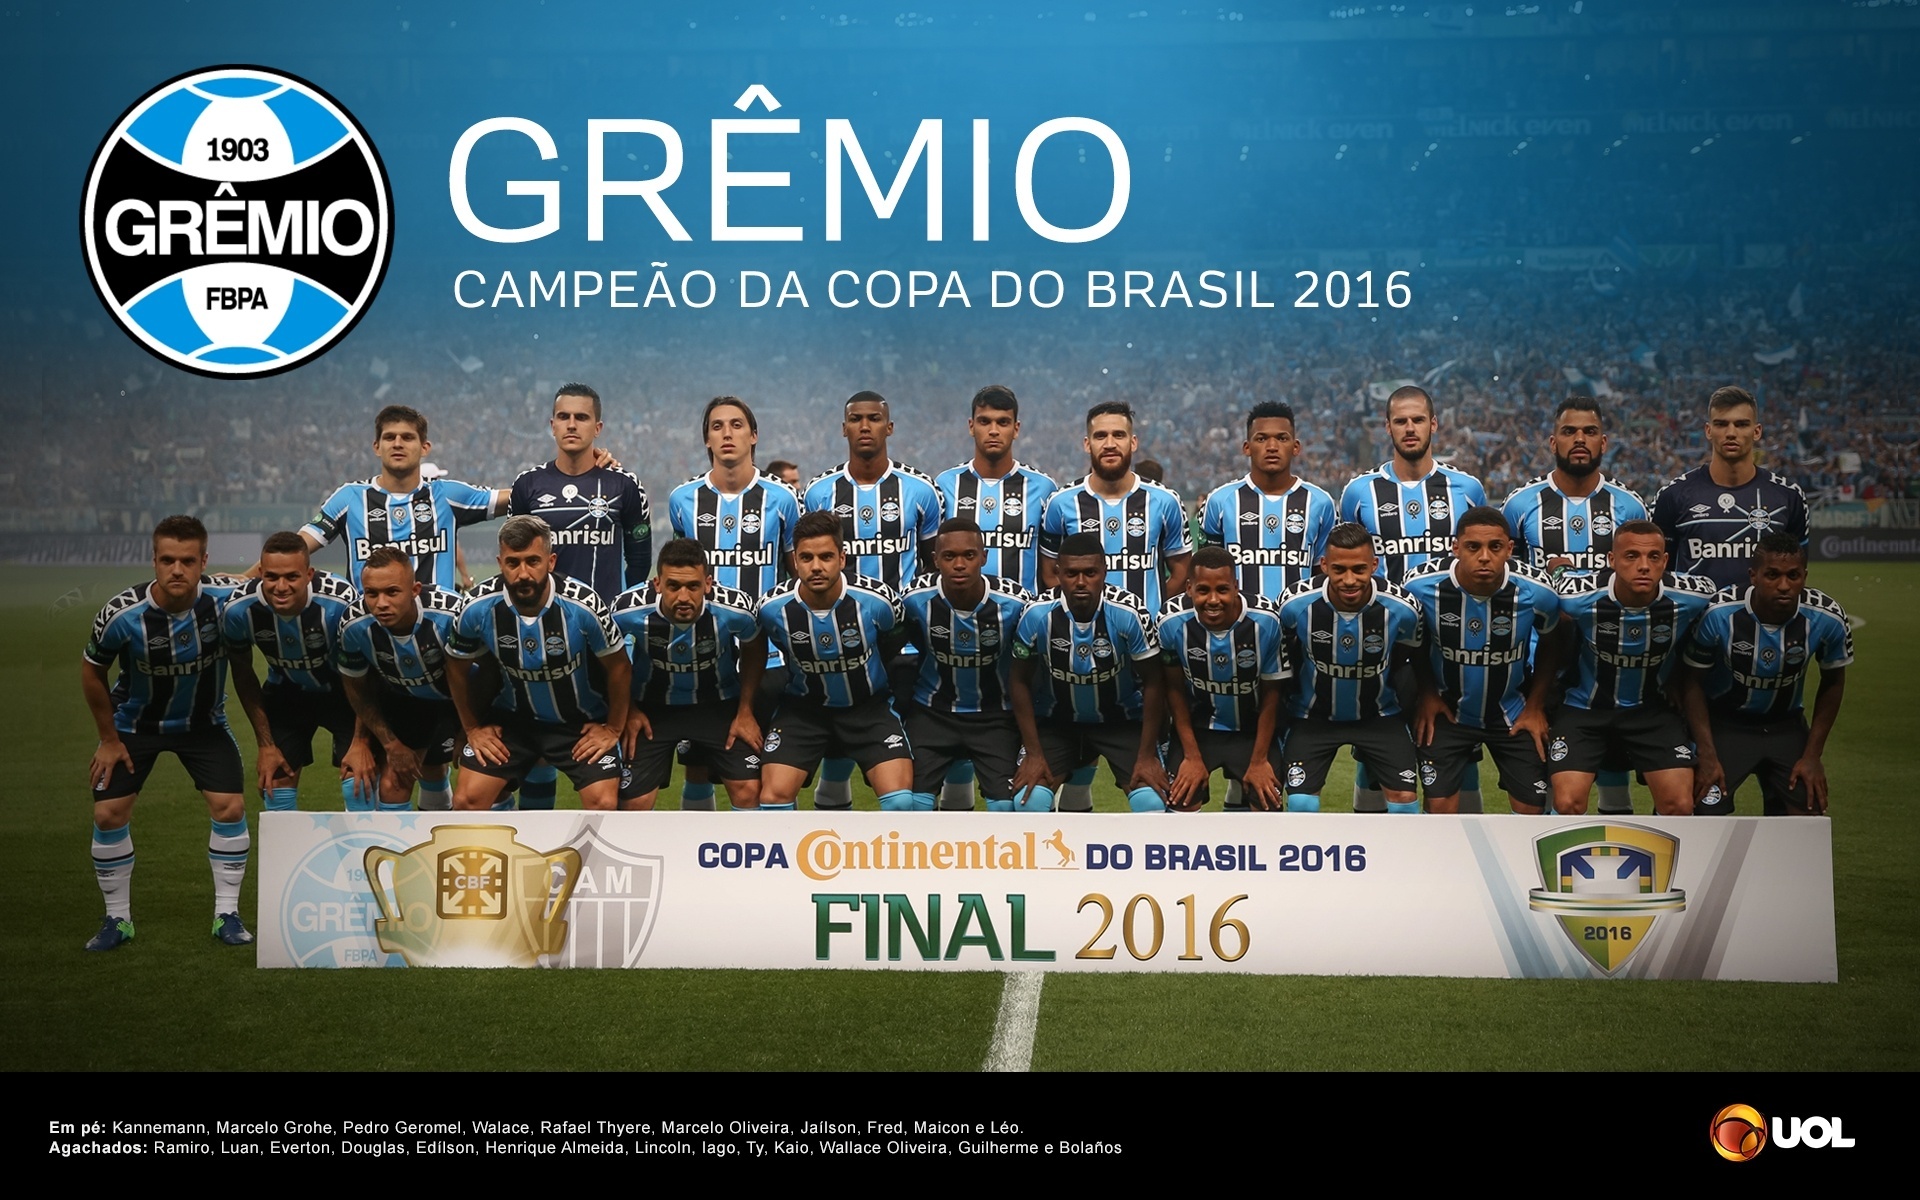 Resultado de imagem para grêmio campeão da copa do brasil 2016